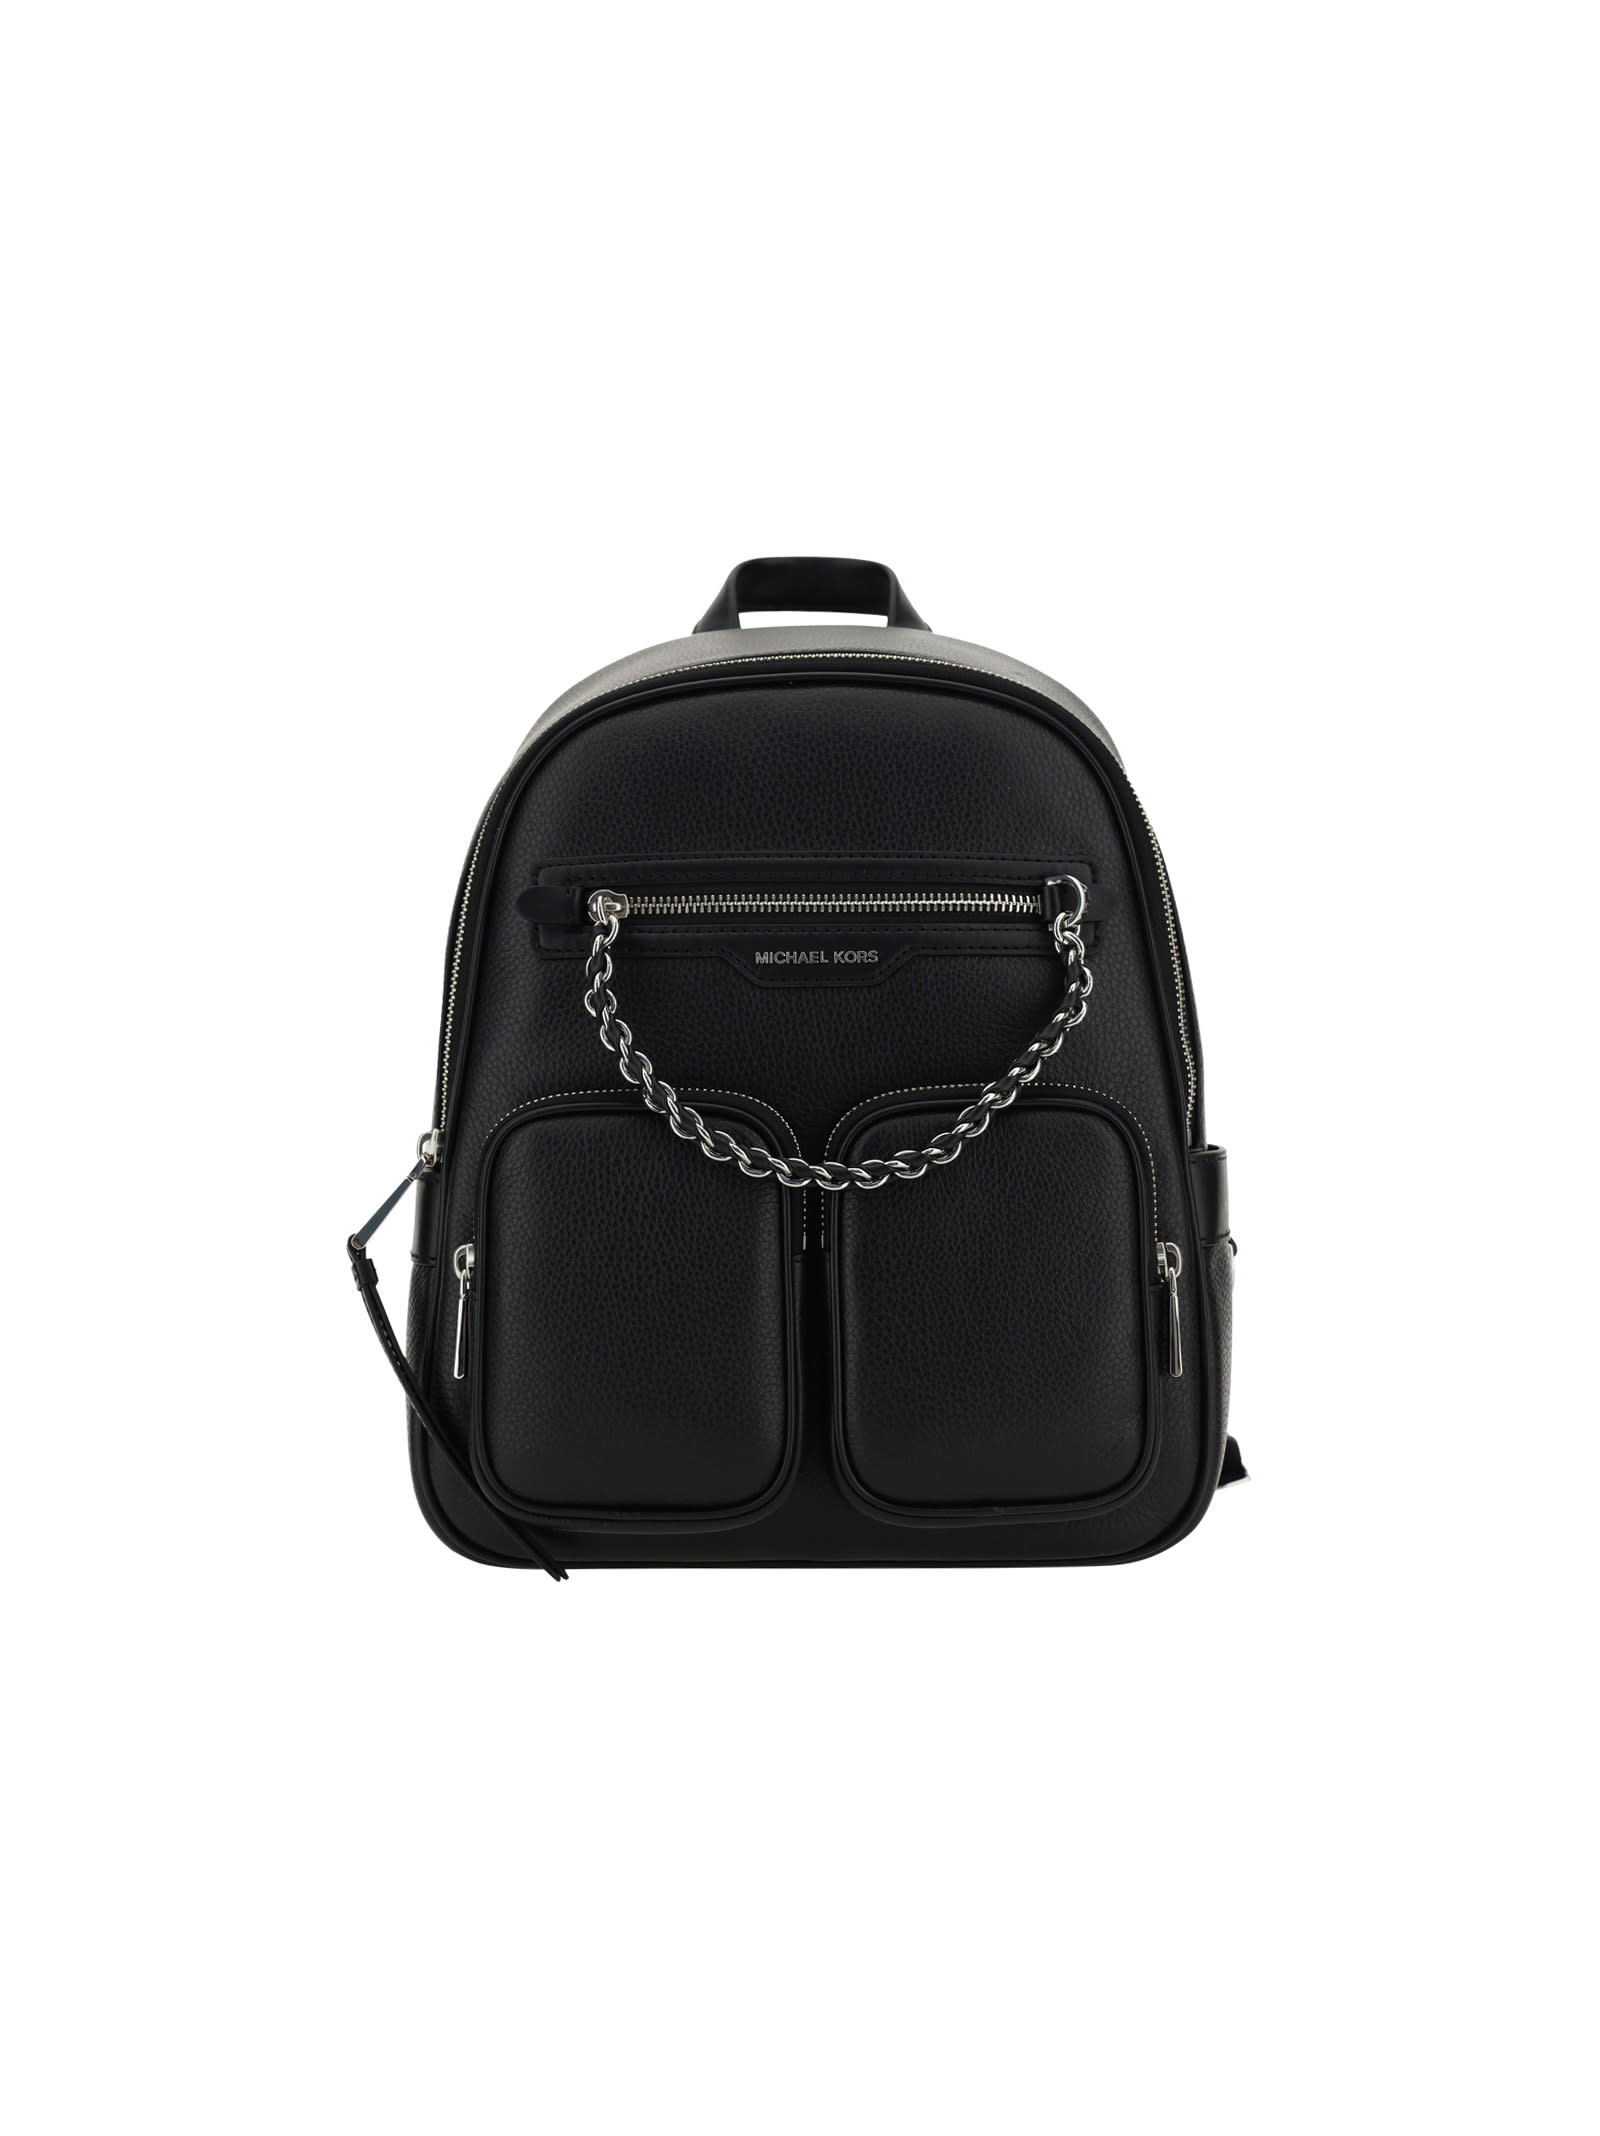 Michael Kors Elliot Backpack In Black